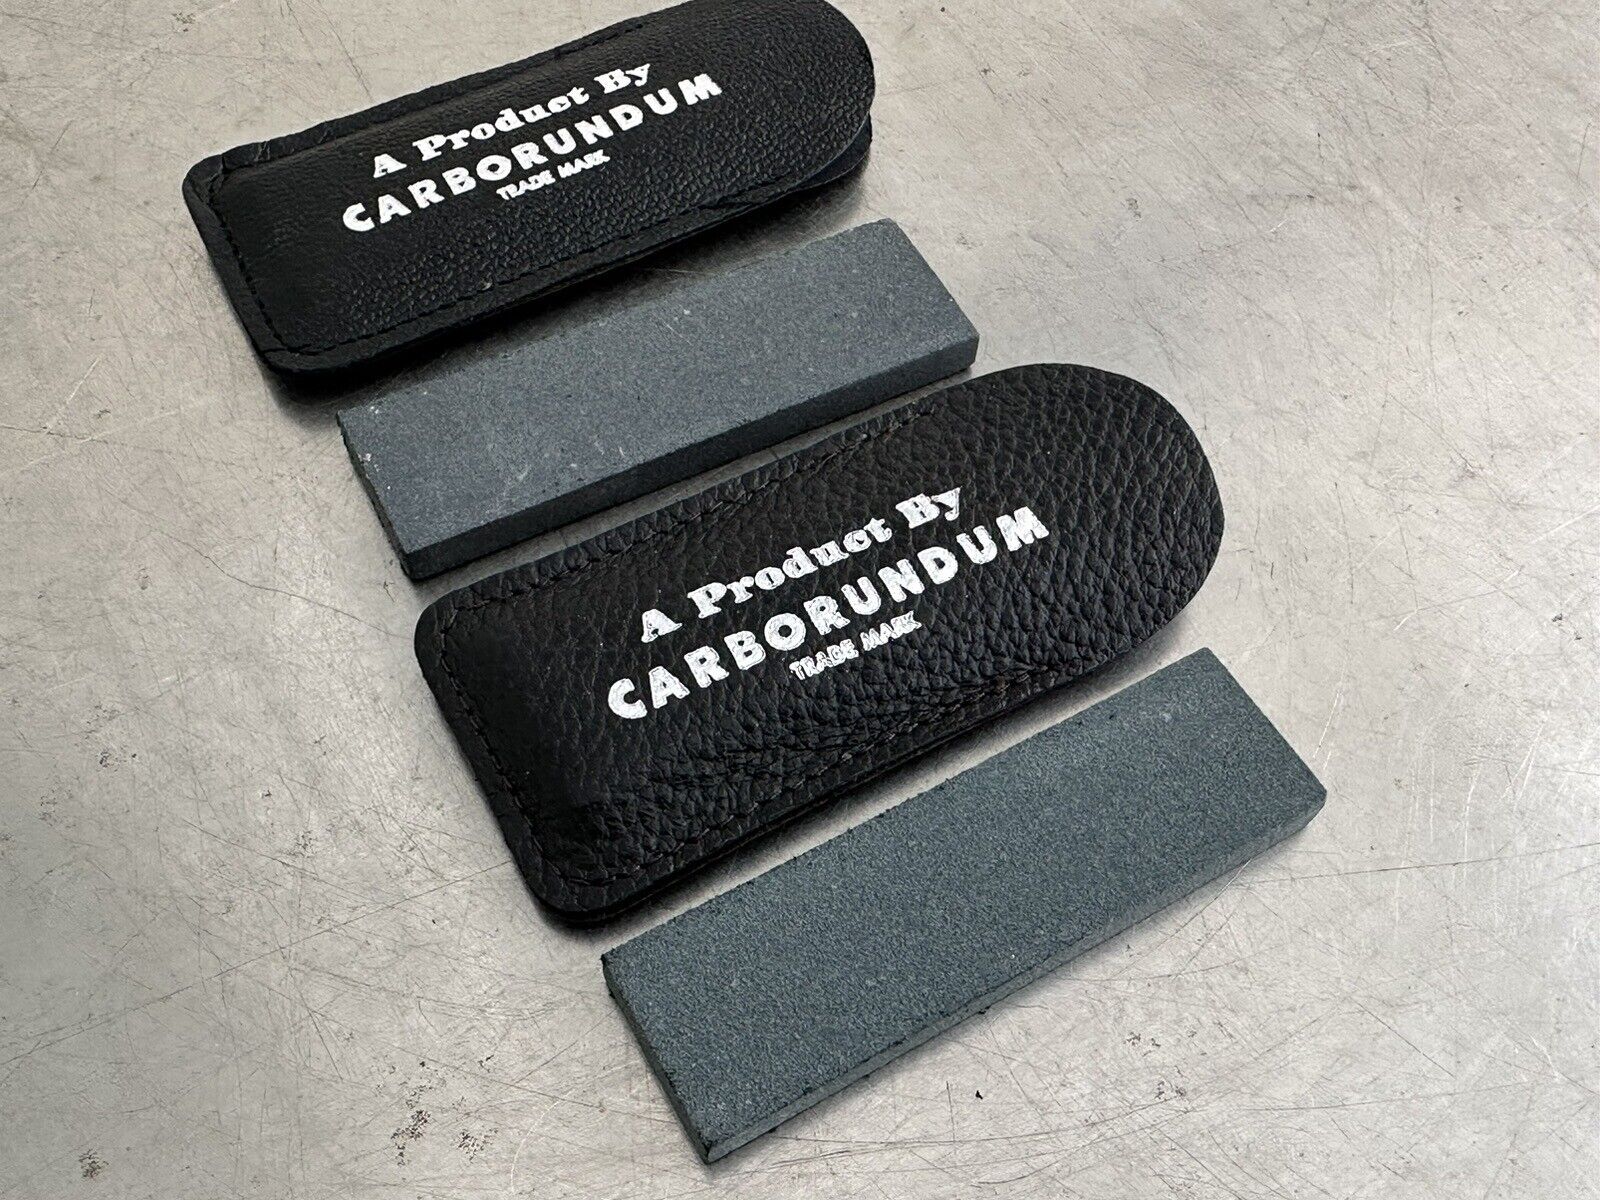 2  New Carborundum Pocket Sharpening Stone &  Case Knife Edge Hone Tool